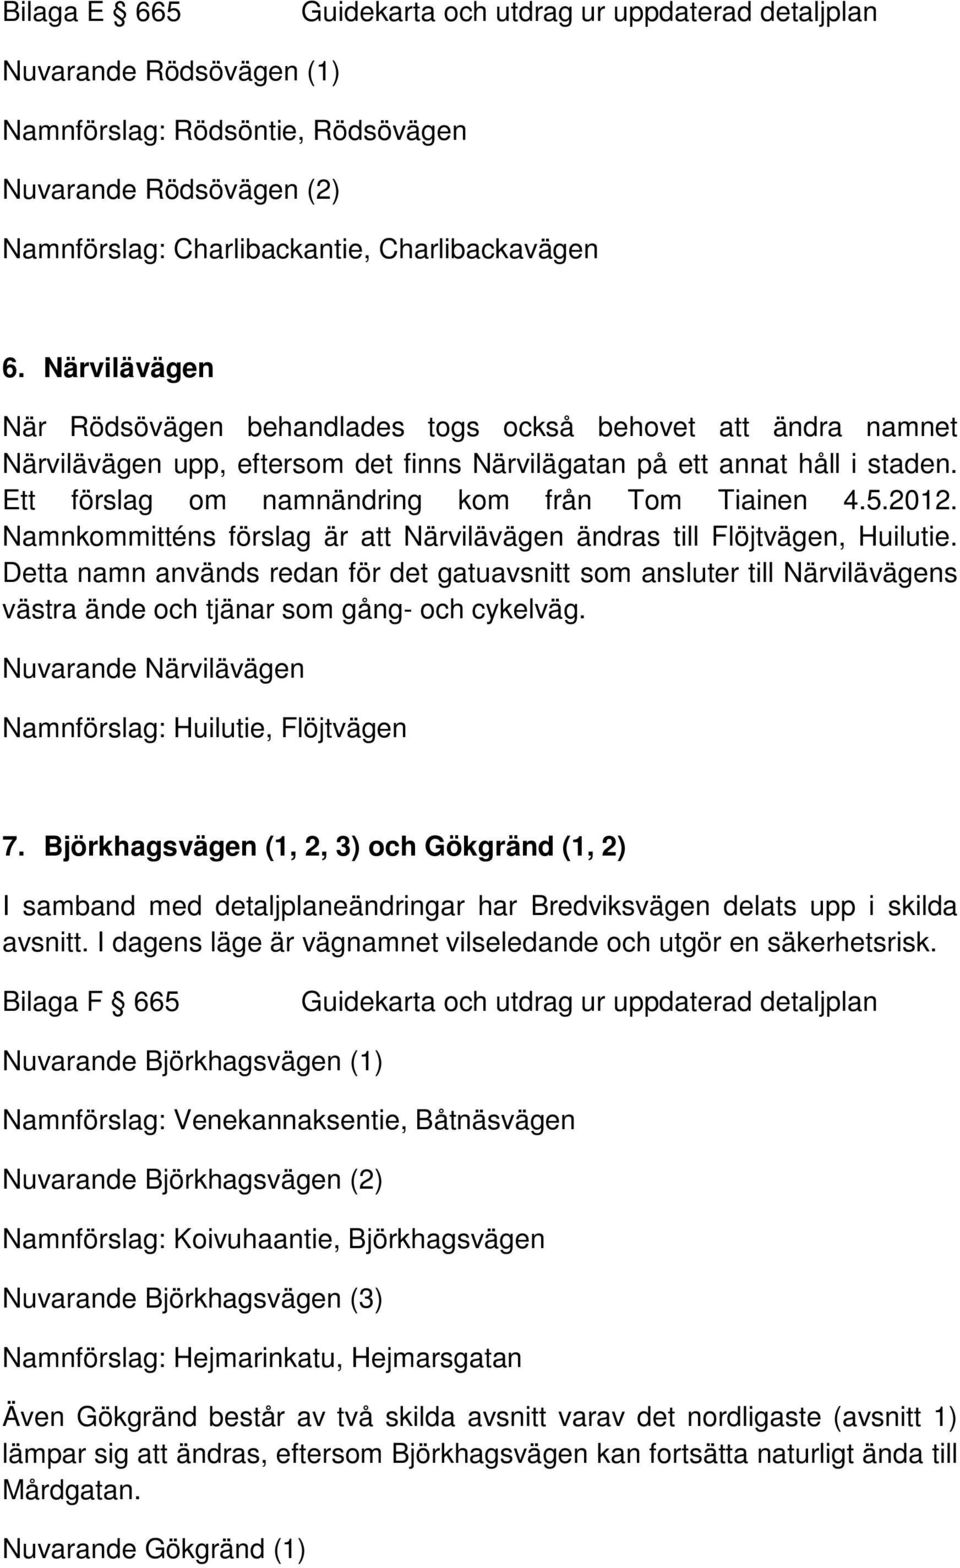 Ett förslag om namnändring kom från Tom Tiainen 4.5.2012. Namnkommitténs förslag är att Närvilävägen ändras till Flöjtvägen, Huilutie.